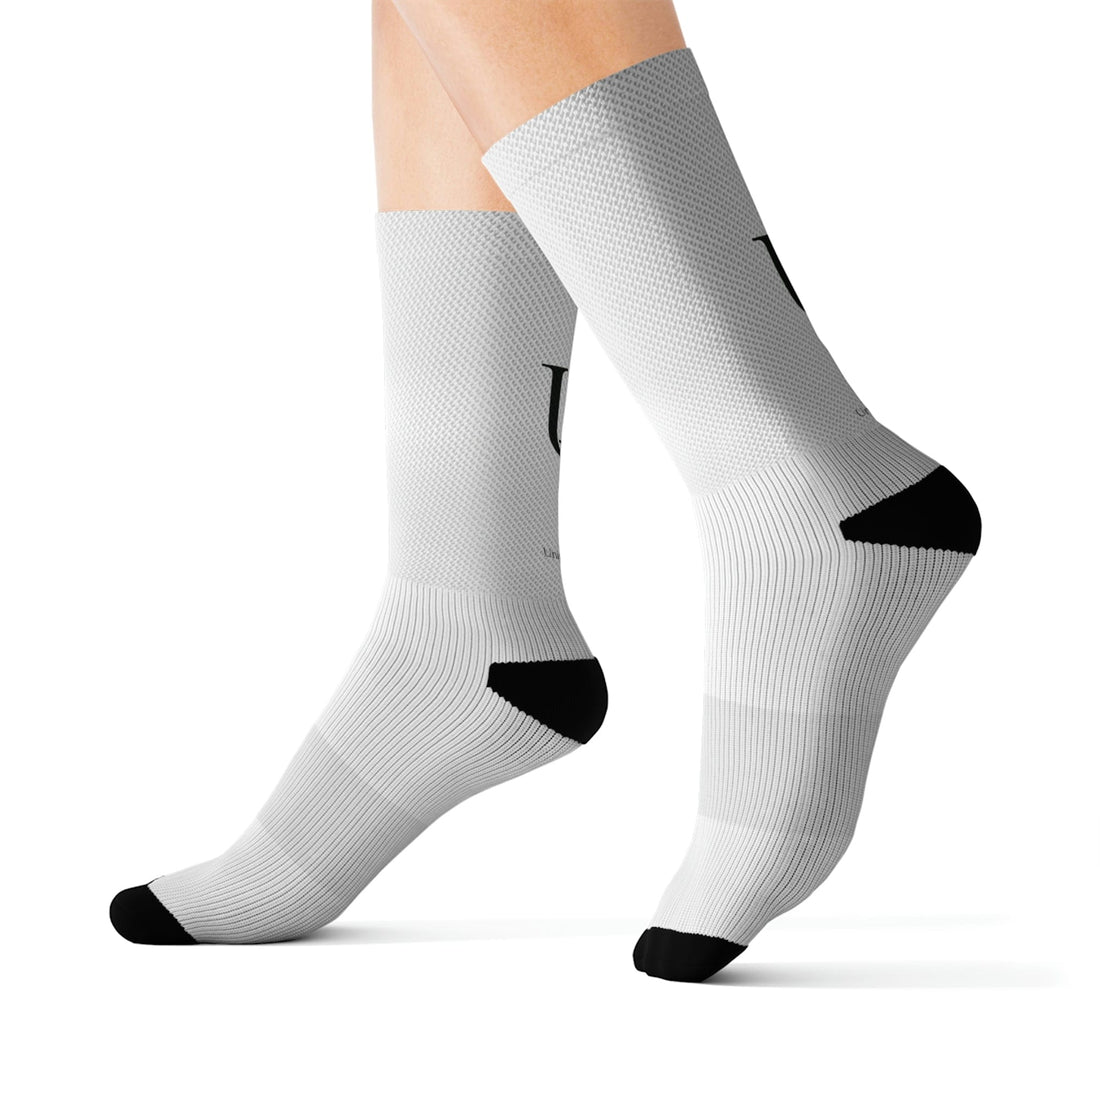 unique kjulture designer socks affordable designer fashion